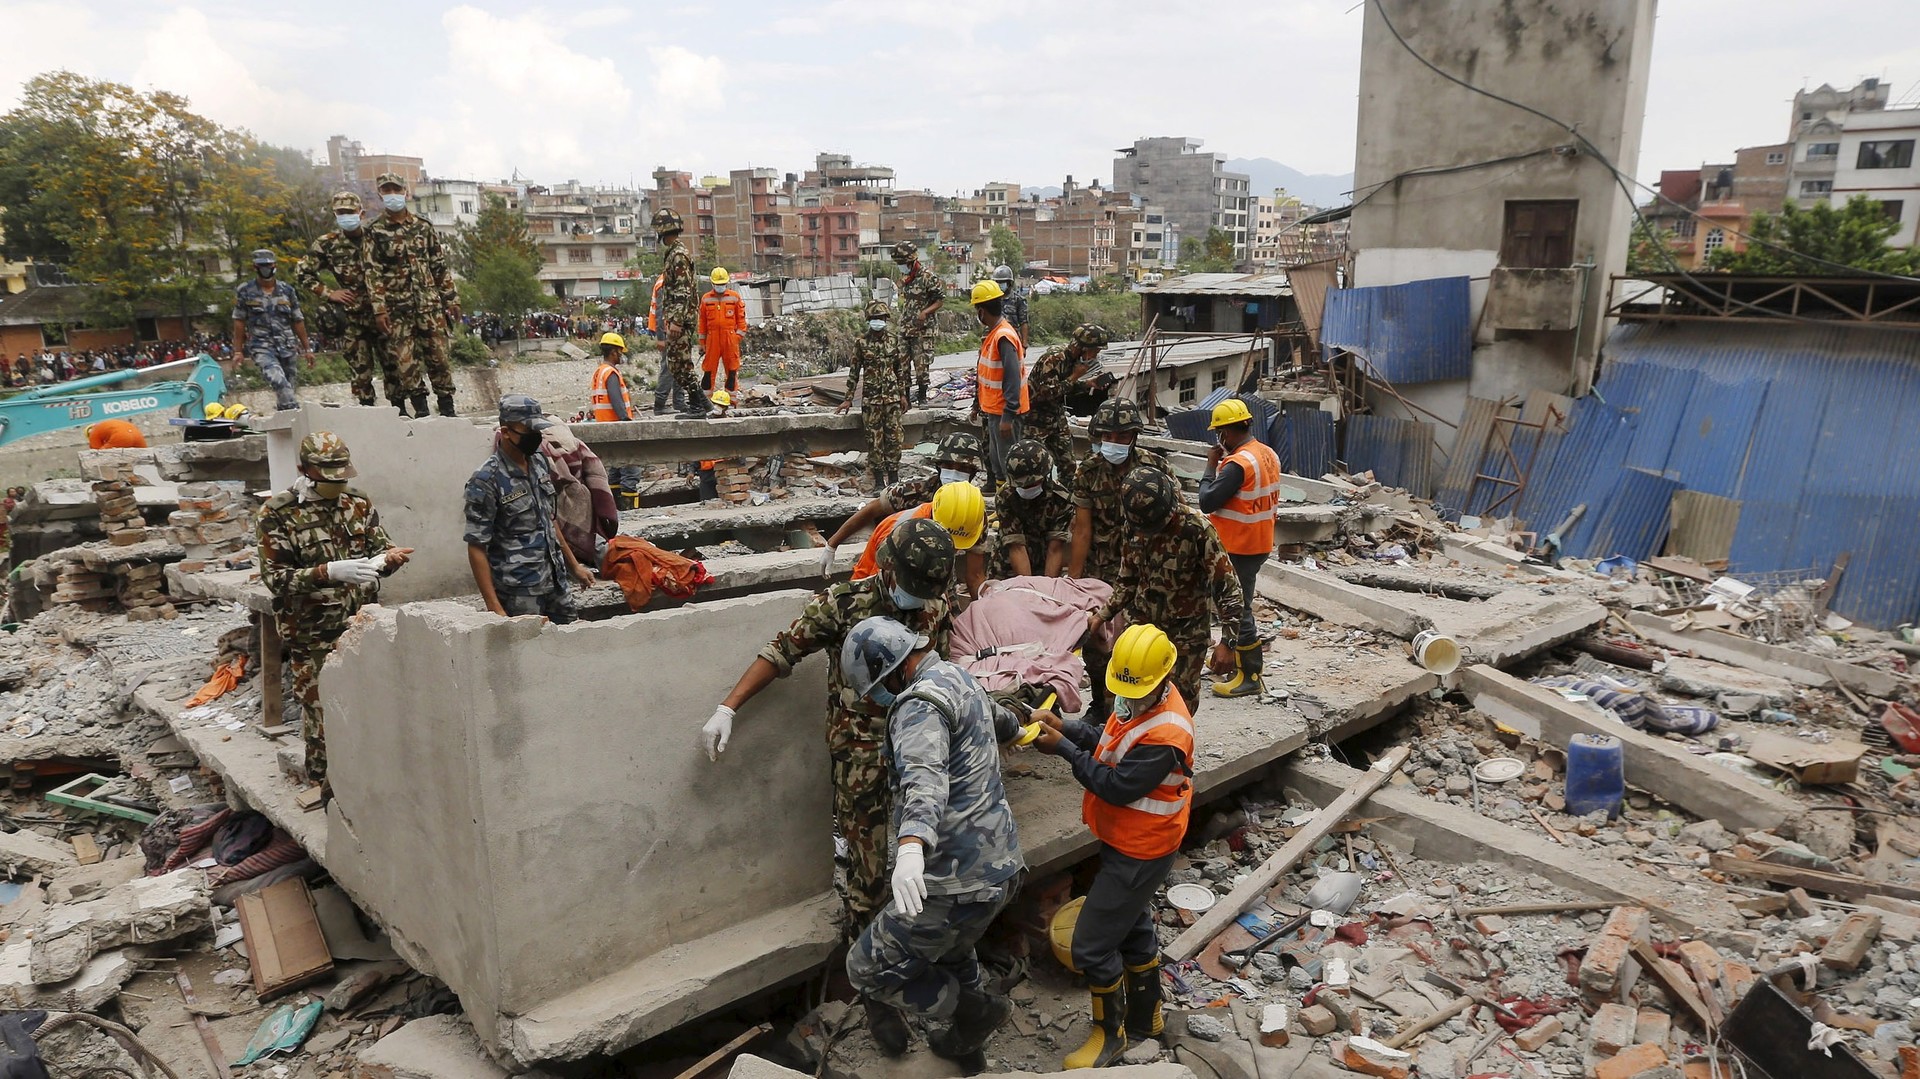 Au Népal, le nombre de morts continue sa triste progression